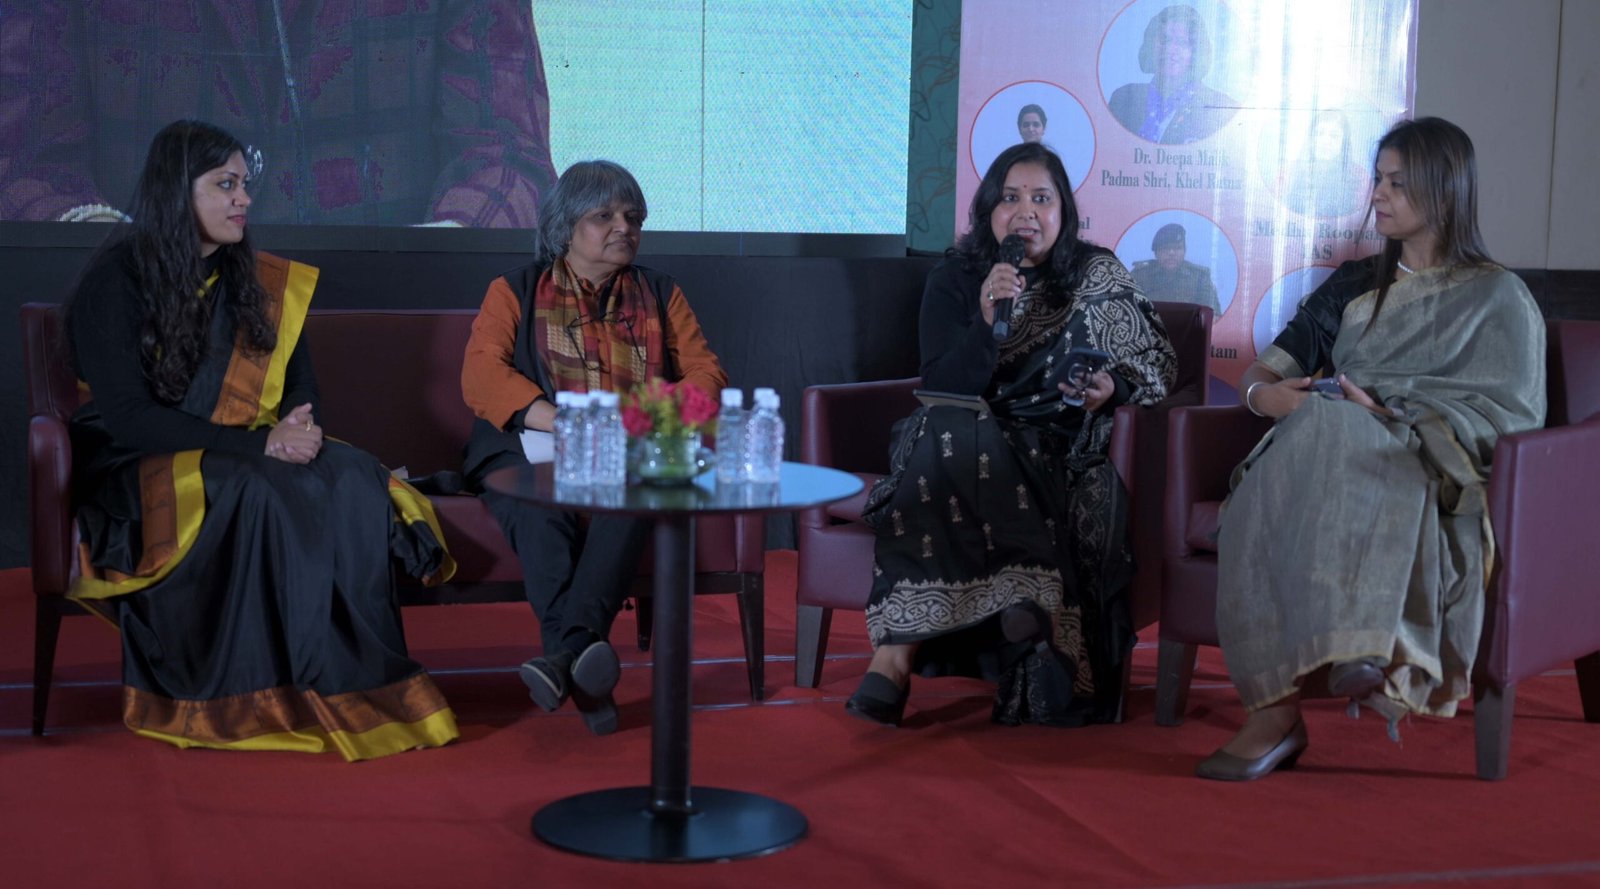 Medha Roopam, Rupamanjari Ghosh, Smita Singh, Swati Sharma during the panel discussion